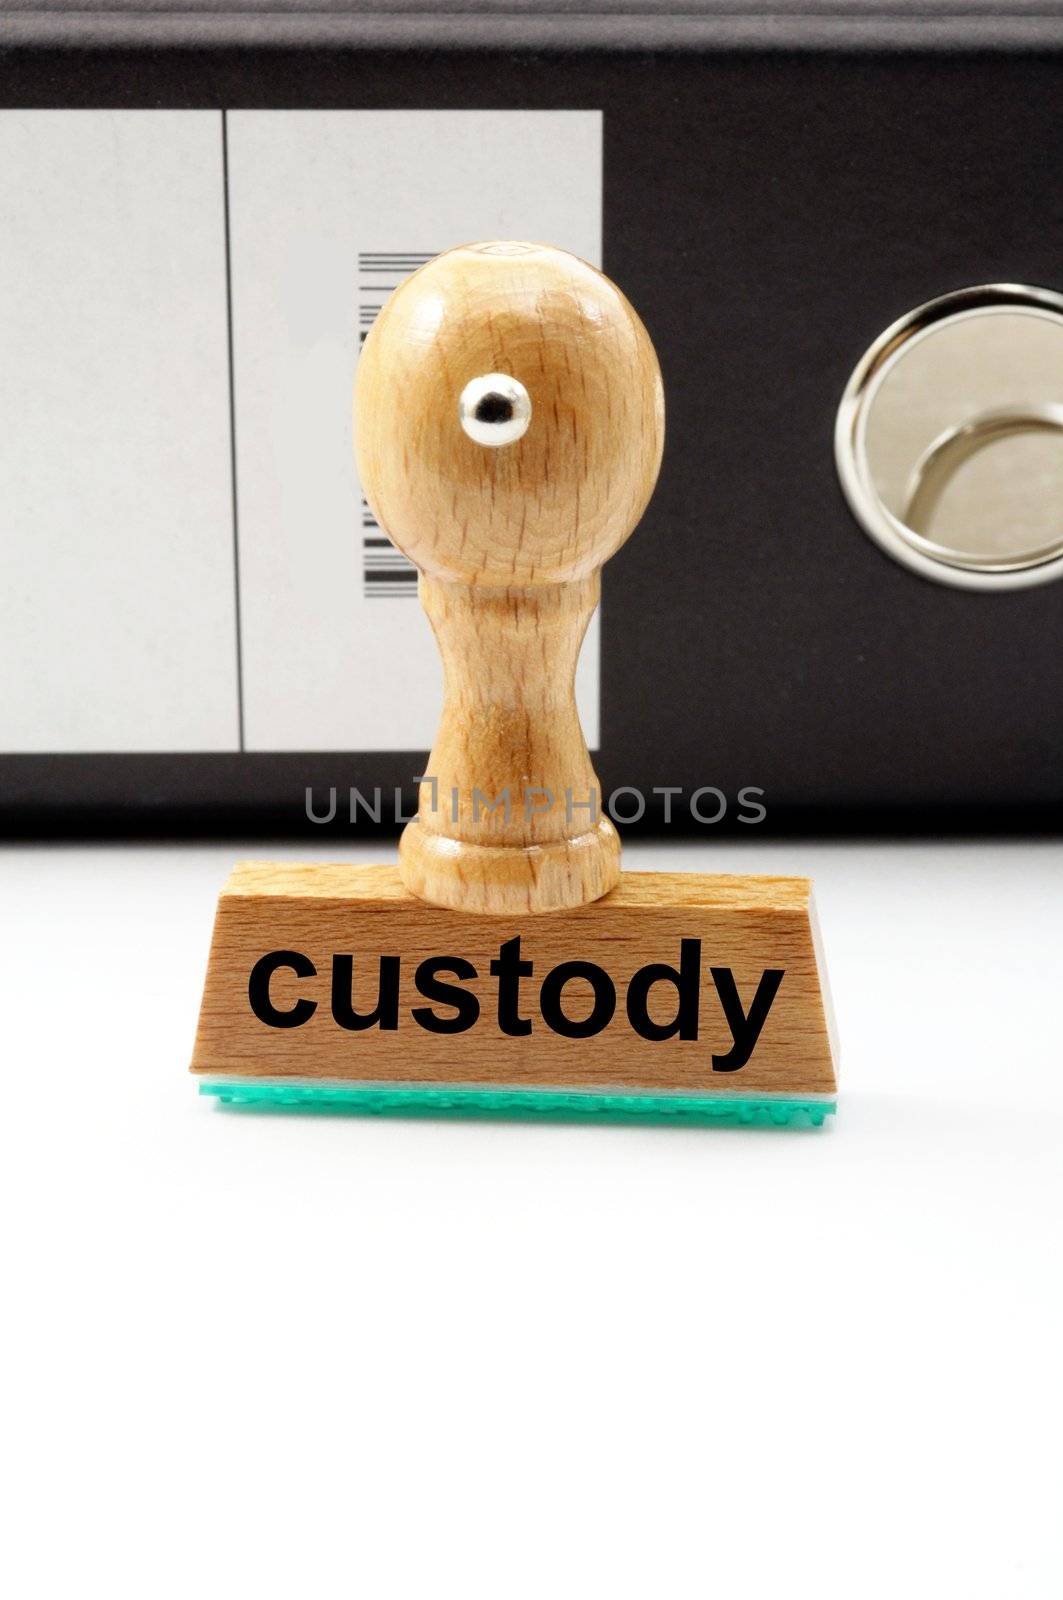 custody by gunnar3000